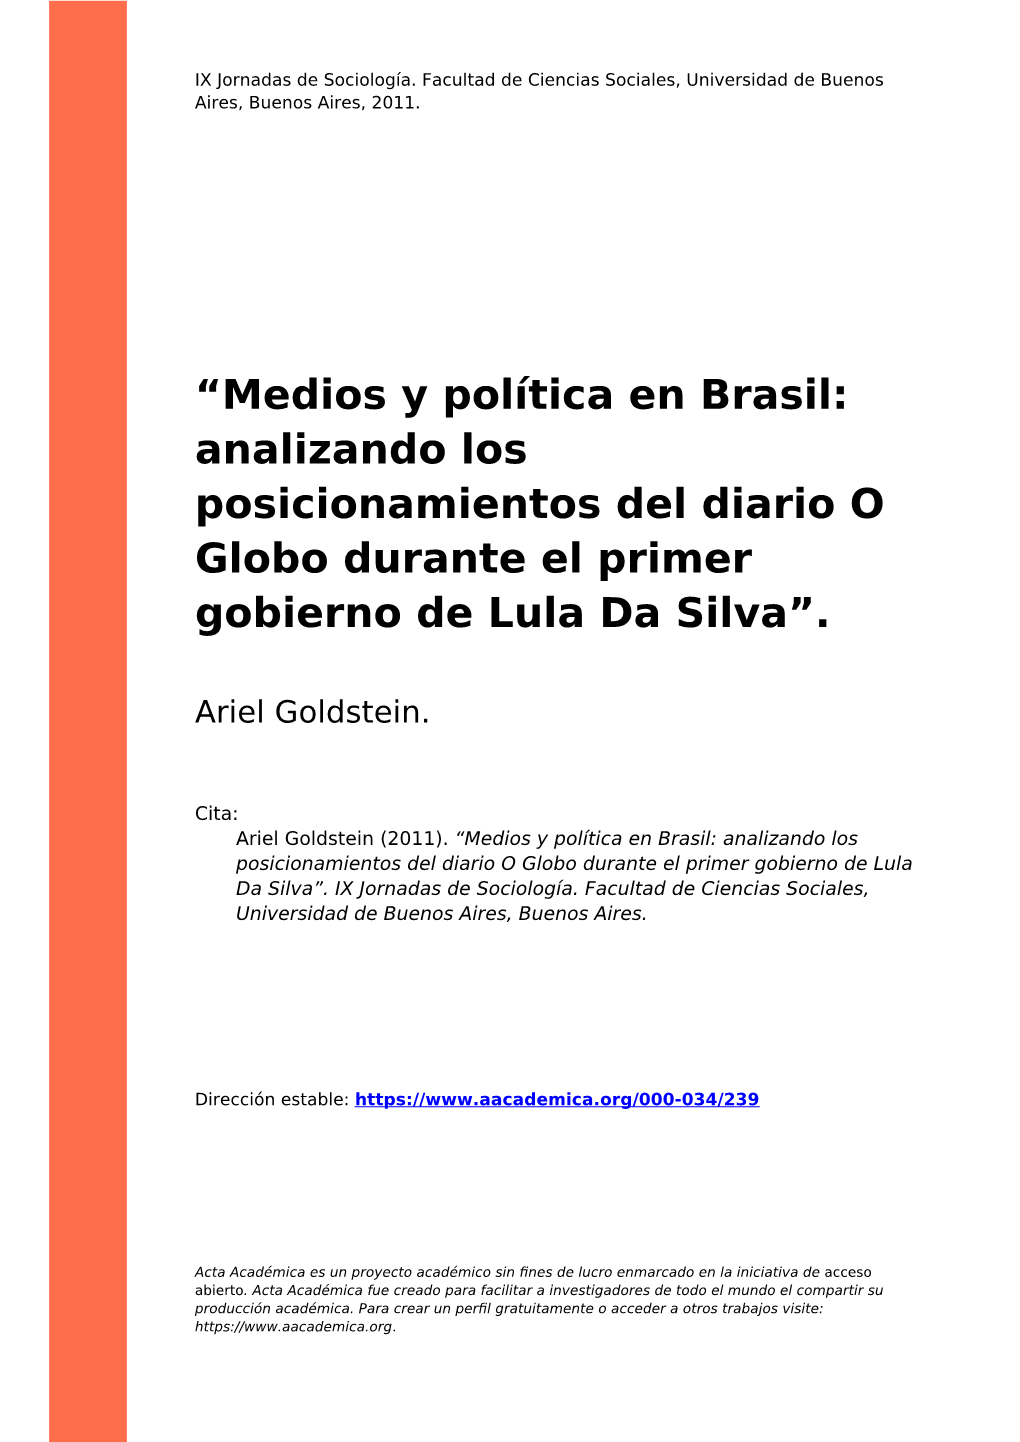 Medios Y Política En Brasil: Analizando Los Posicionamientos Del Diario O Globo Durante El Primer Gobierno De Lula Da Silva”